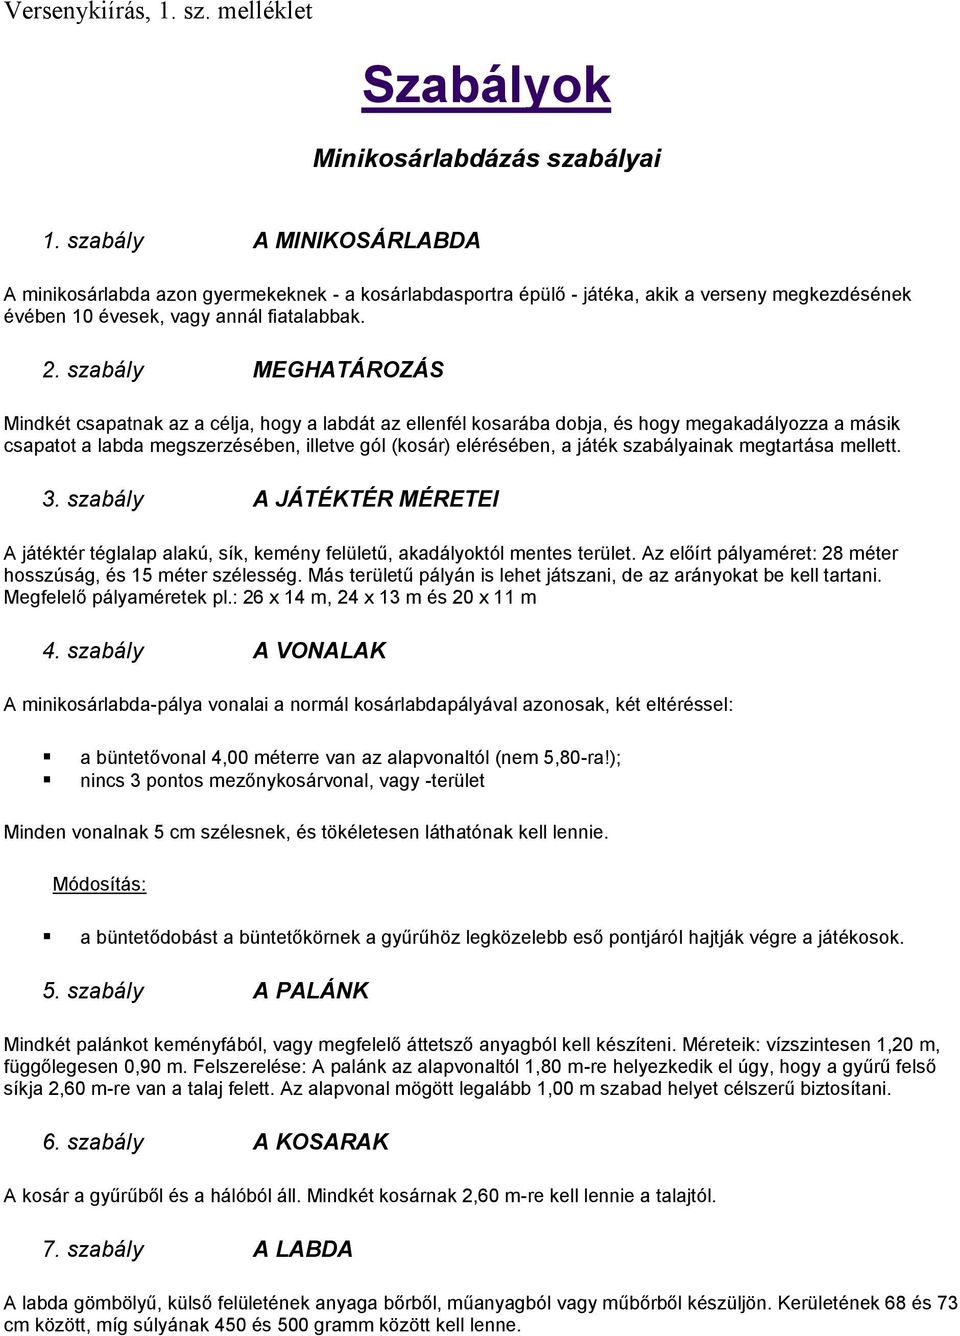 Szabályok. Minikosárlabdázás szabályai - PDF Ingyenes letöltés